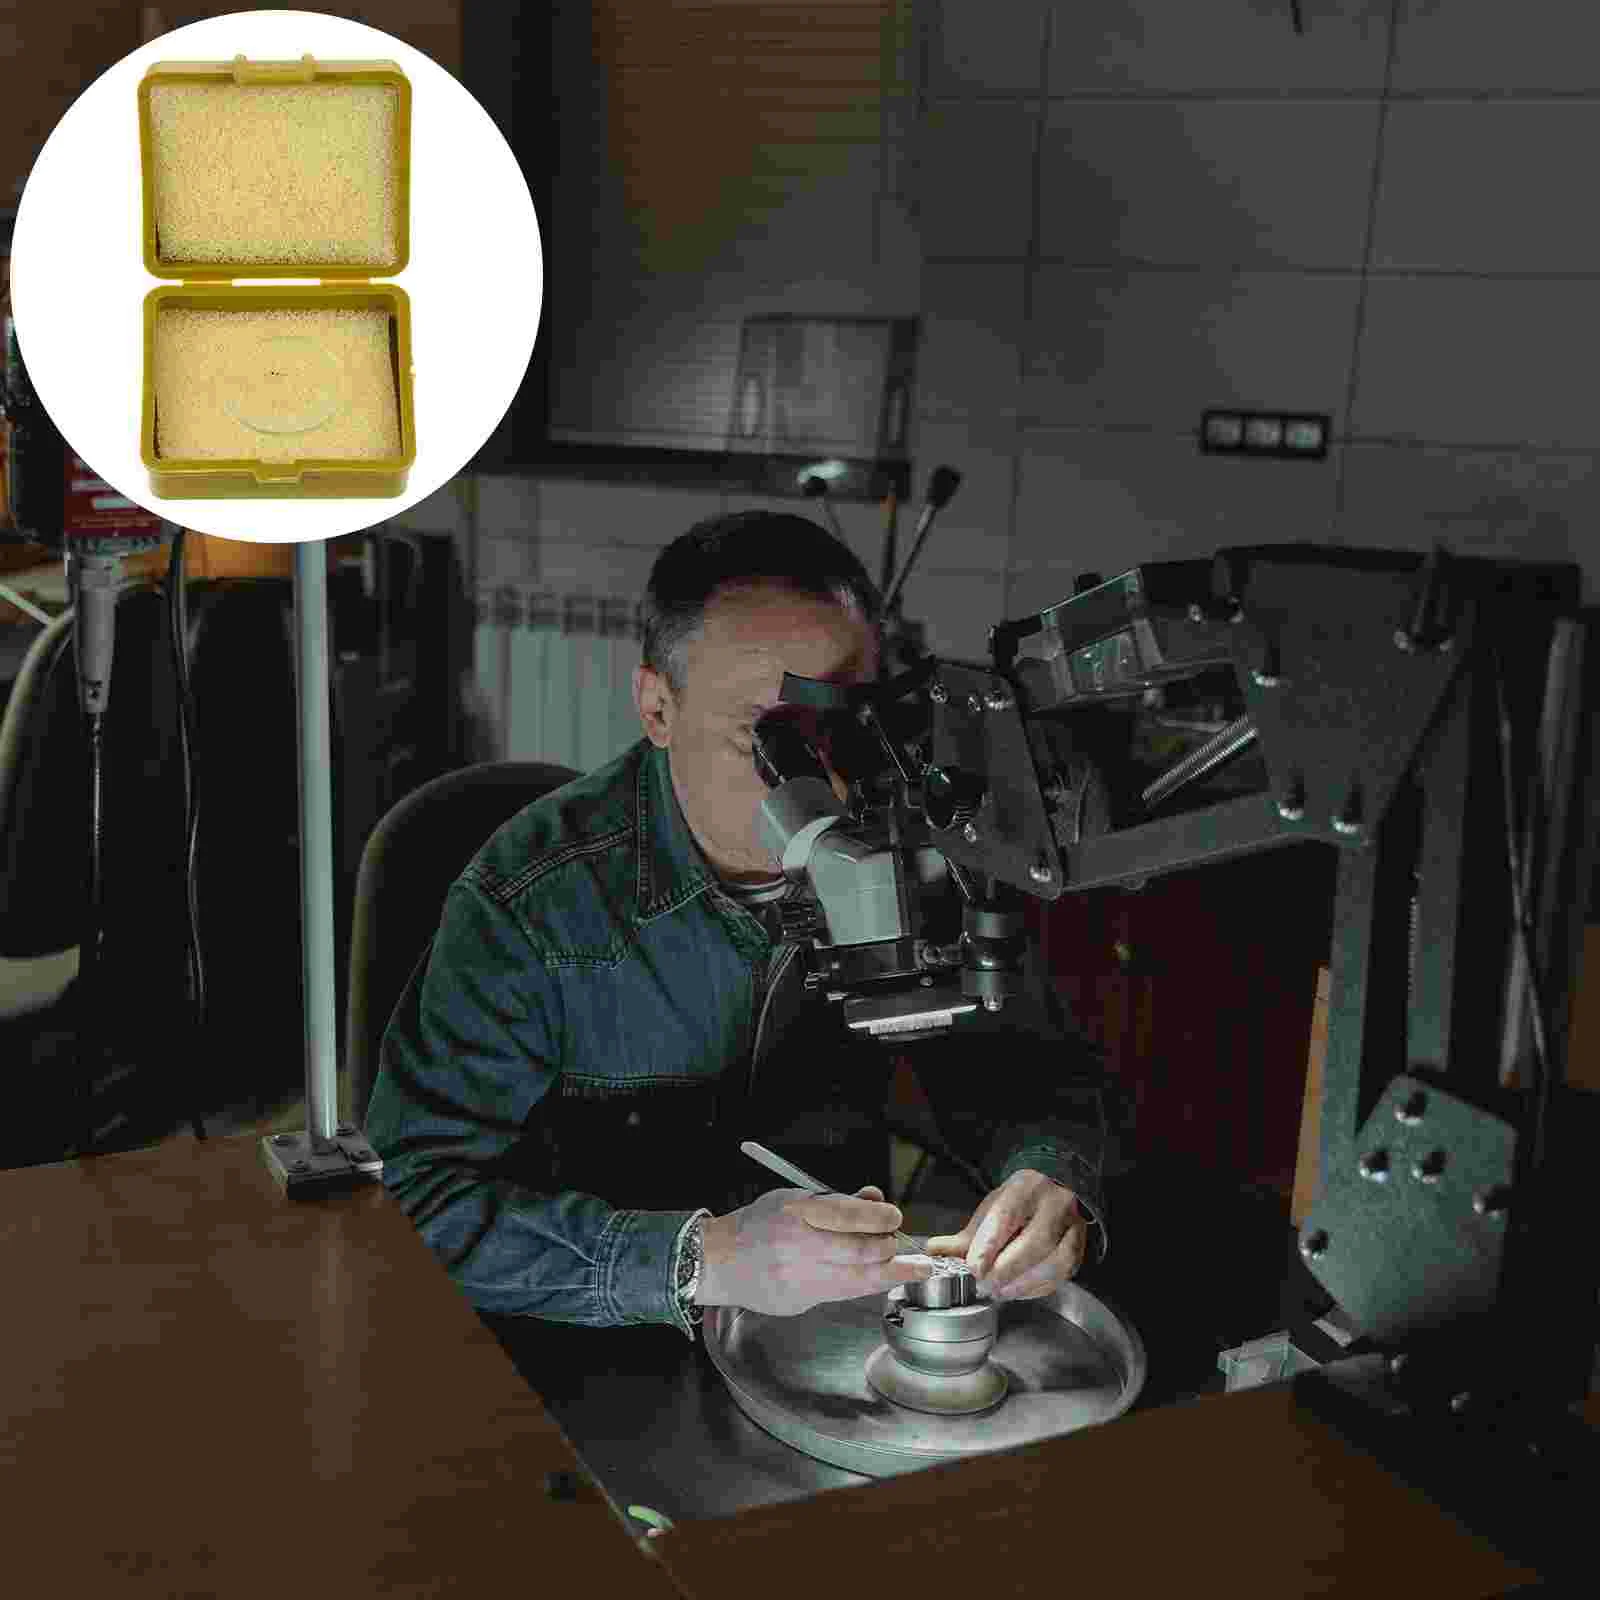 

Окуляр микрометр слайды область измерения линейка точность окуляр микрометр стекло микроскоп K9 лист